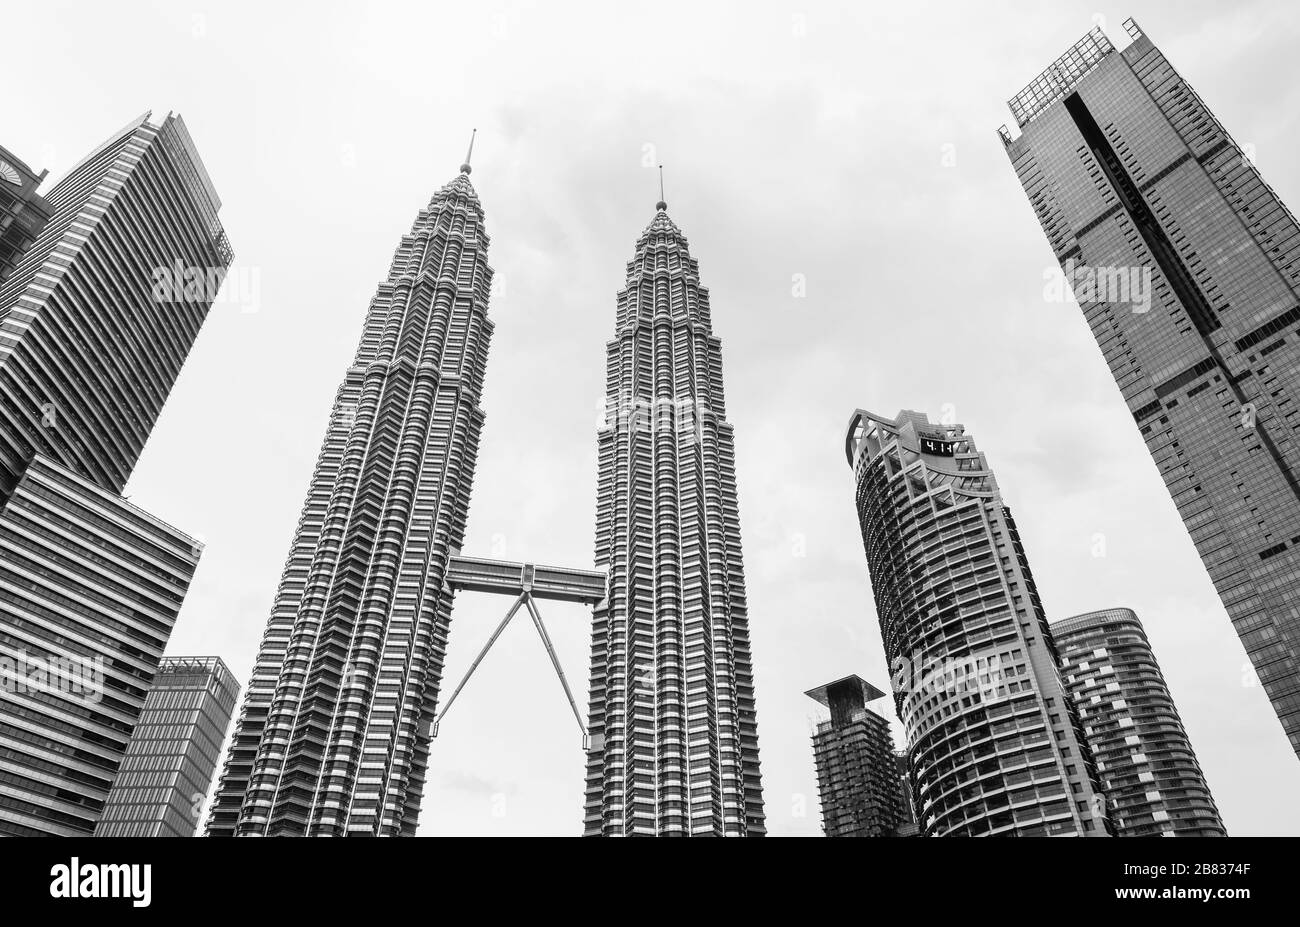 Kuala Lumpur, Malaisie - 25 novembre 2019 : horizon avec les tours jumelles Petronas. Fond photo noir et blanc Banque D'Images